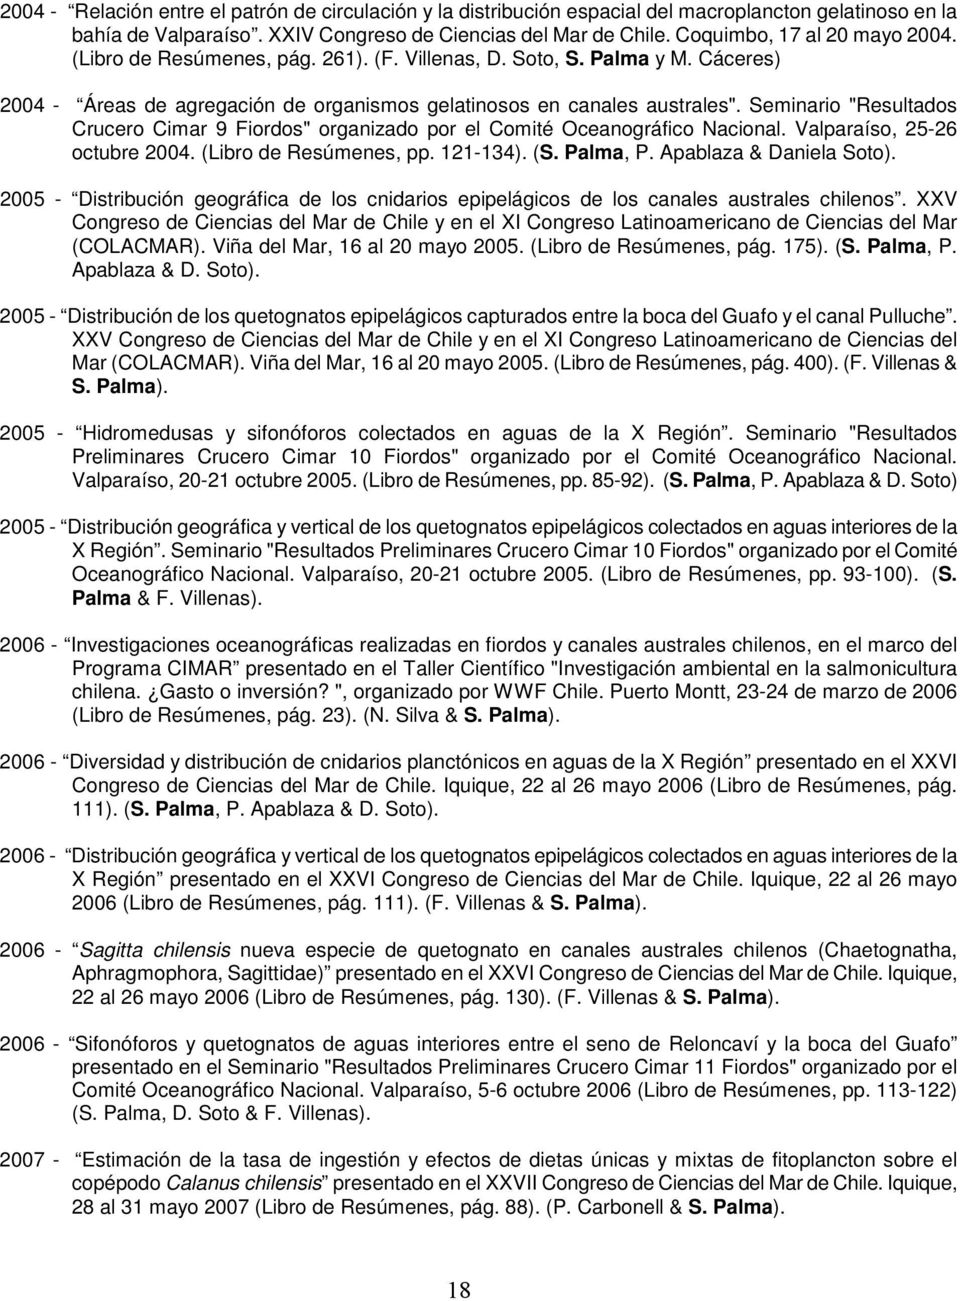 Seminario "Resultados Crucero Cimar 9 Fiordos" organizado por el Comité Oceanográfico Nacional. Valparaíso, 25-26 octubre 2004. (Libro de Resúmenes, pp. 121-134). (S. Palma, P.